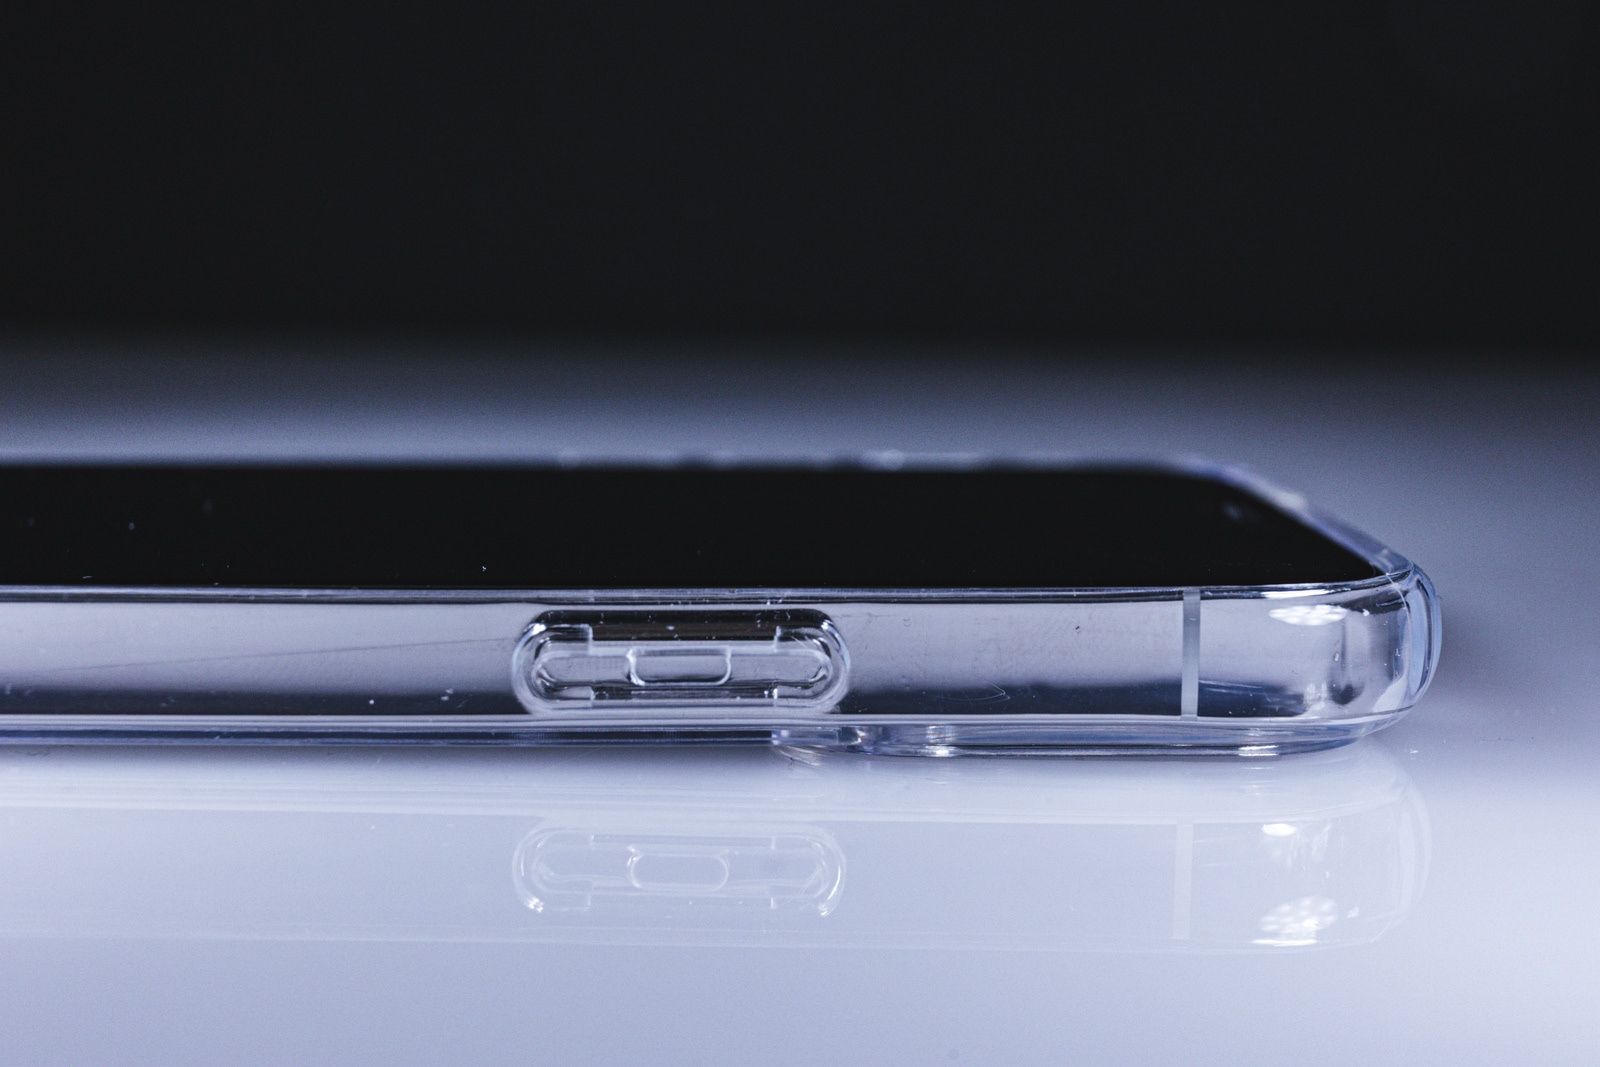 Spigen-GAURAN-iPhone12-Case-and-Display-Protector-09.jpg